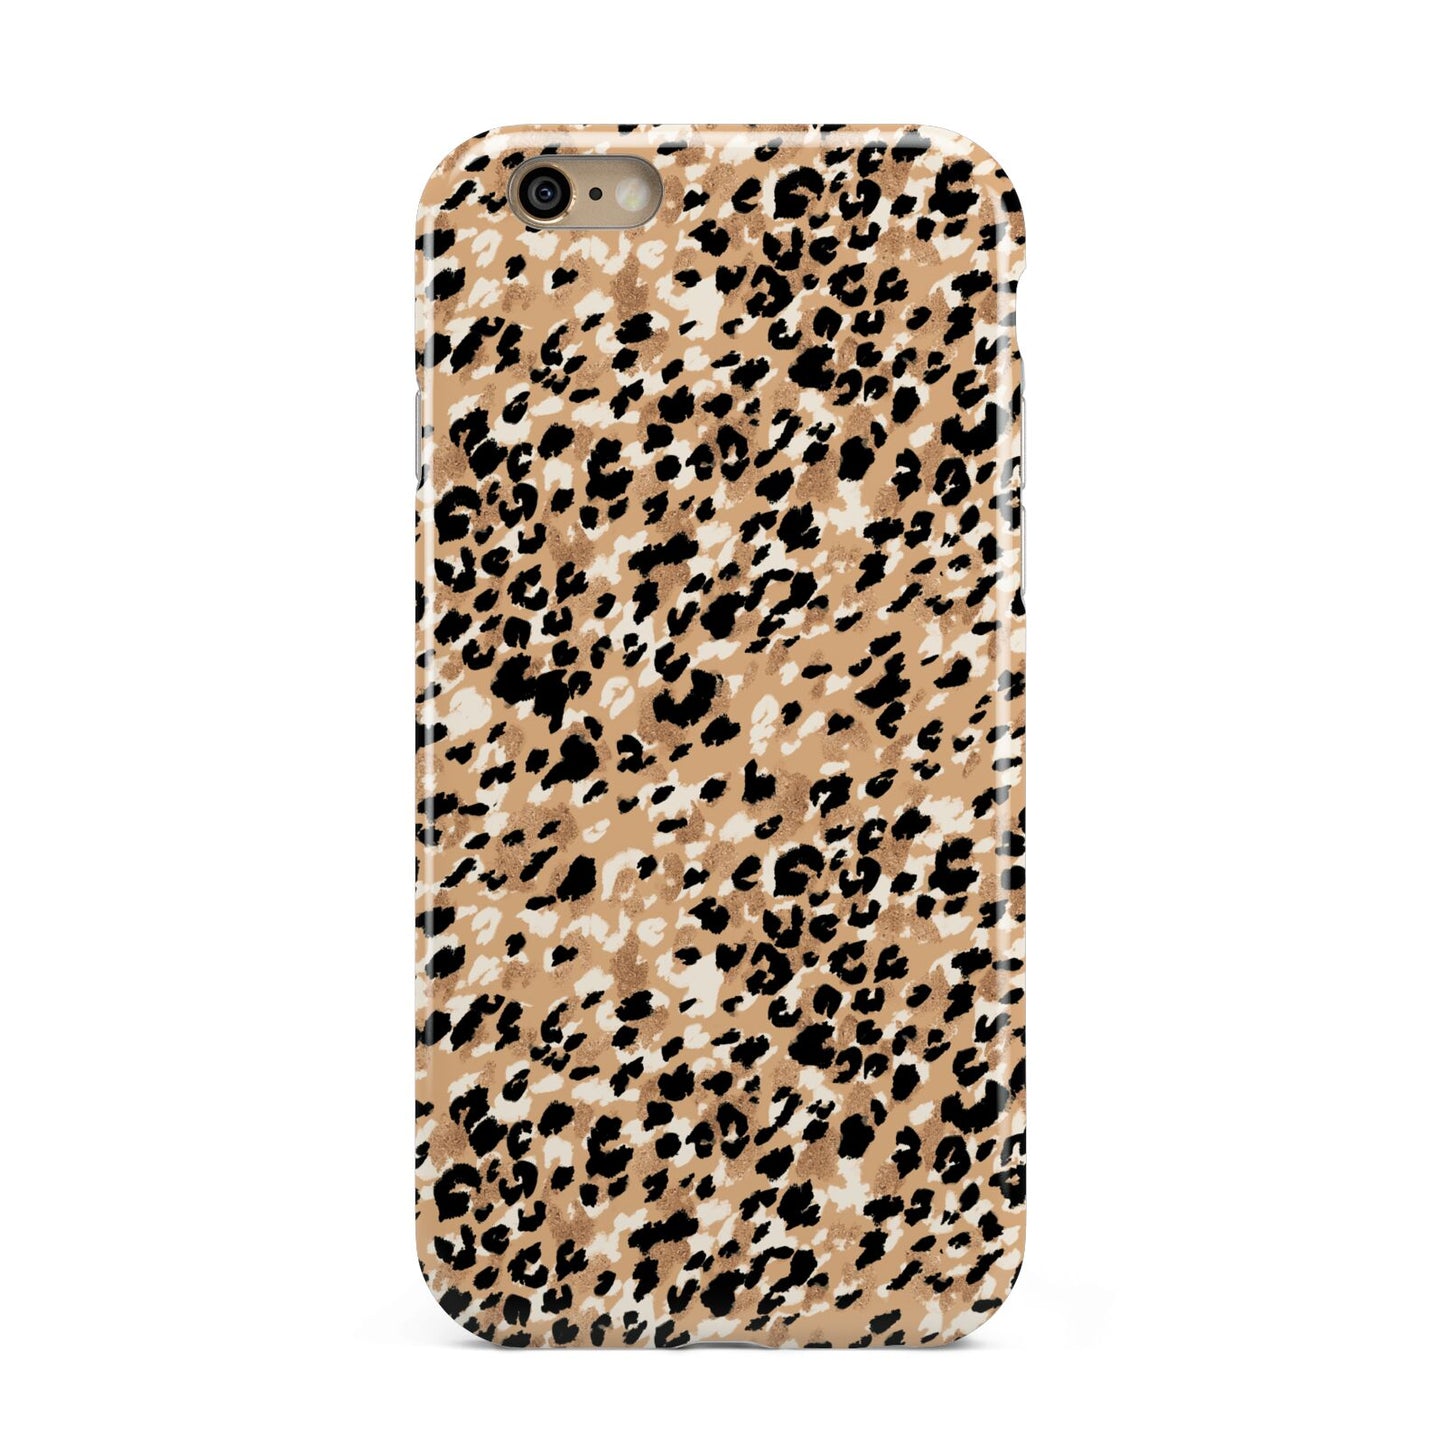 Leopard Print Apple iPhone 6 3D Tough Case